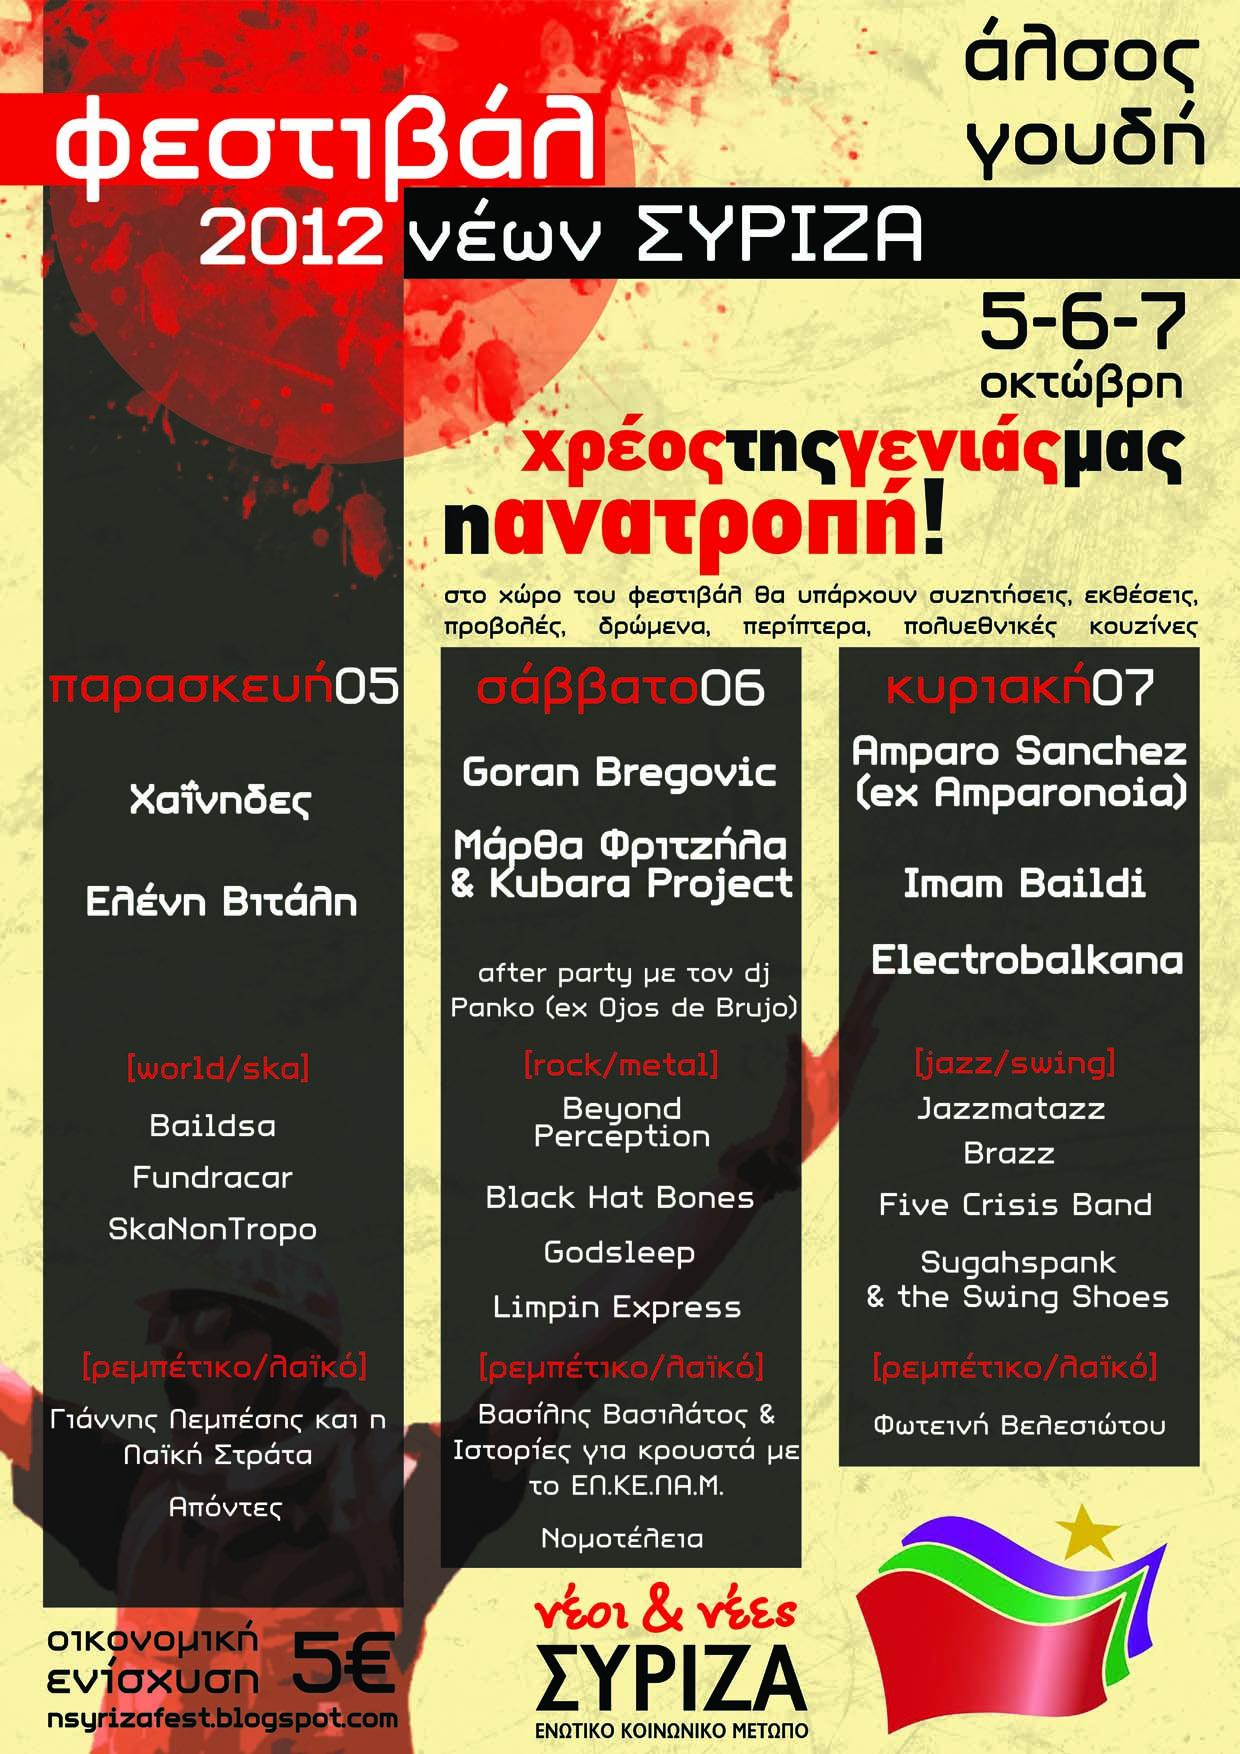 Φεστιβάλ Νέων ΣΥΡΙΖΑ || Άλσος Γουδή 5-7 Οκτωβρίου